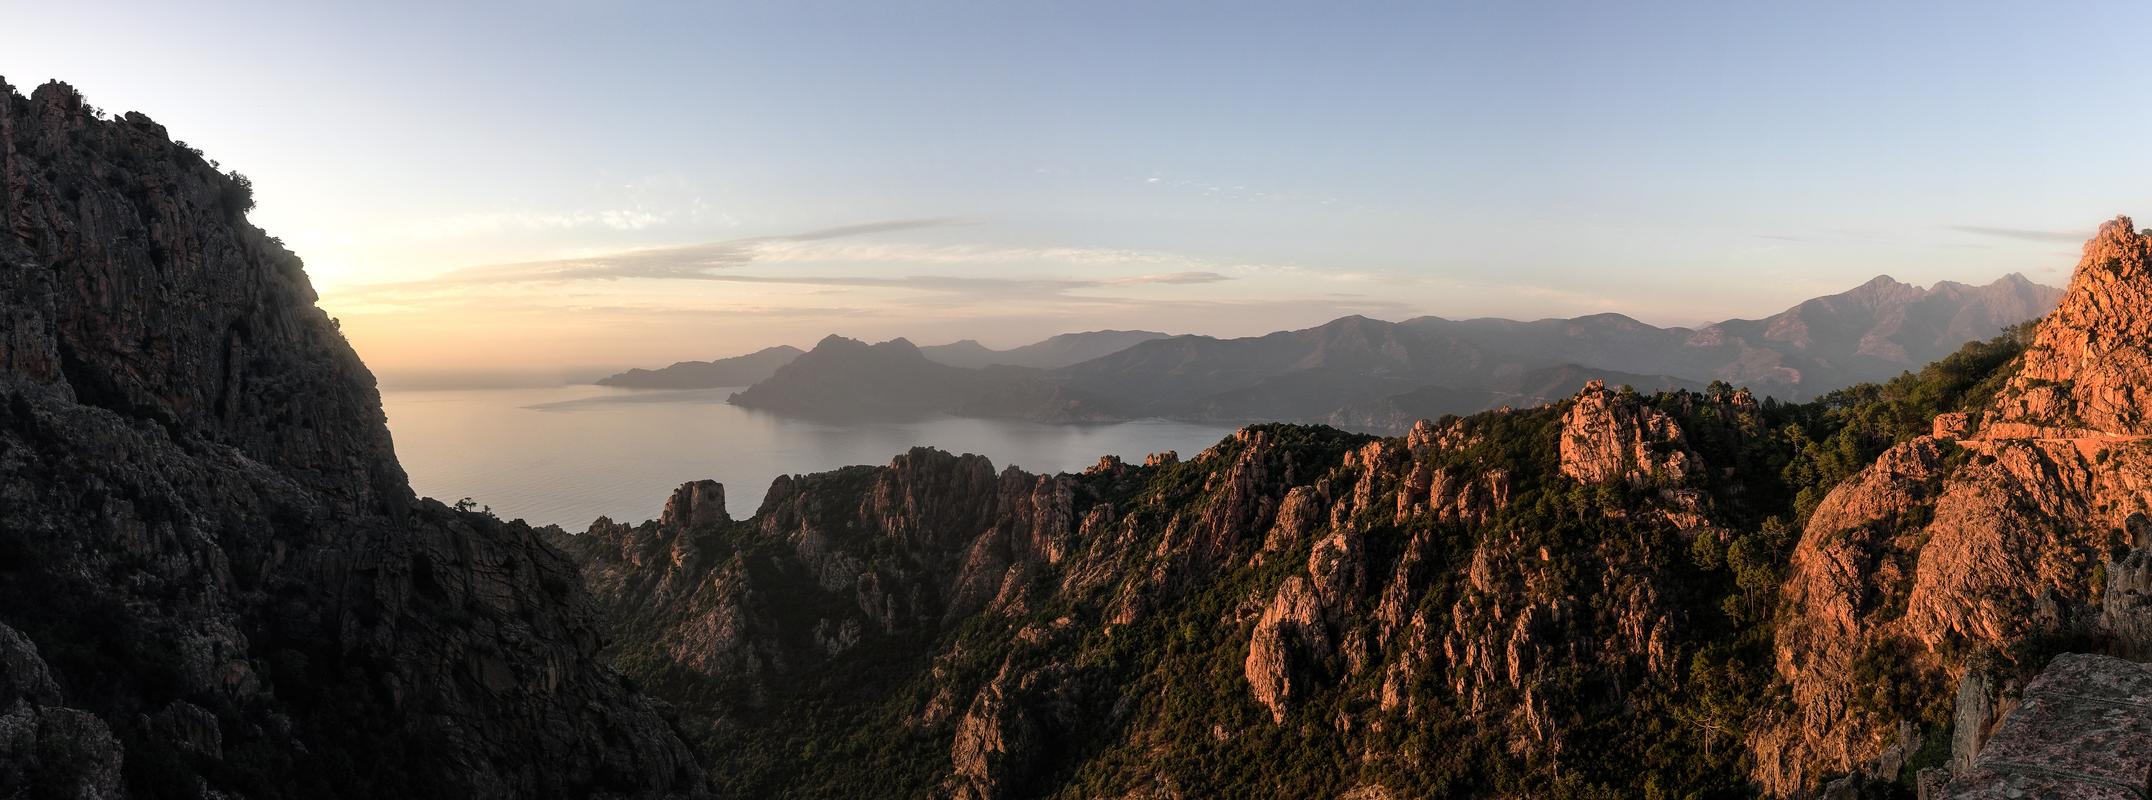 Fonds Philippe Pierangeli - Panoramiques de mers et plaines en Corse